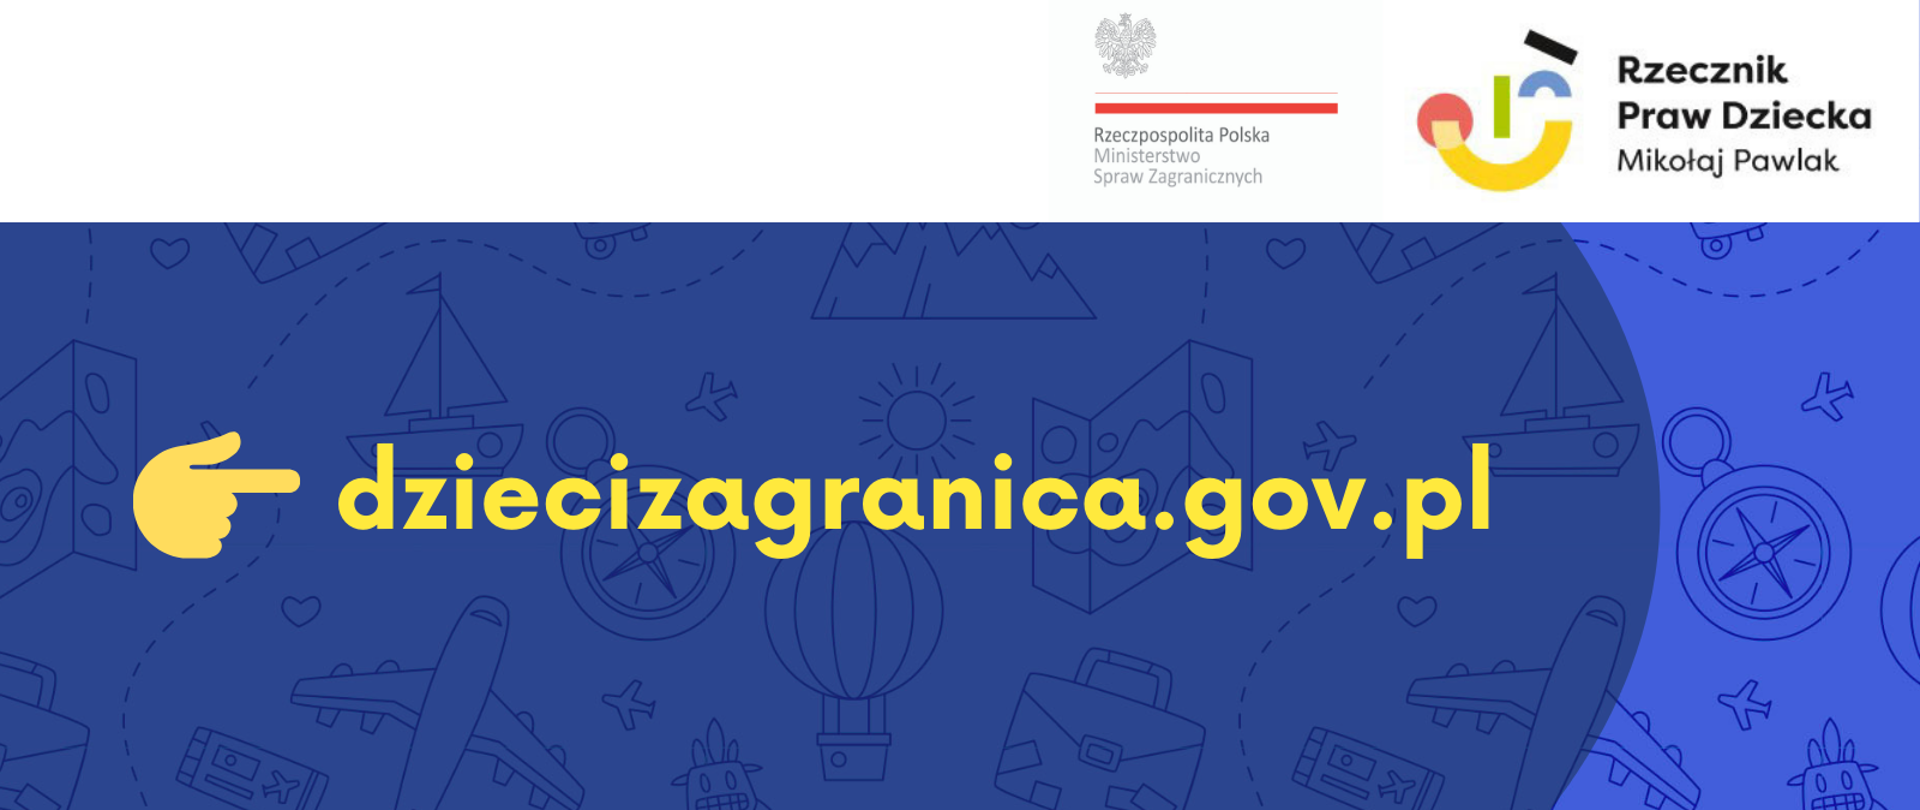 Nowa strona internetowa dziecizagranica.gov.pl 